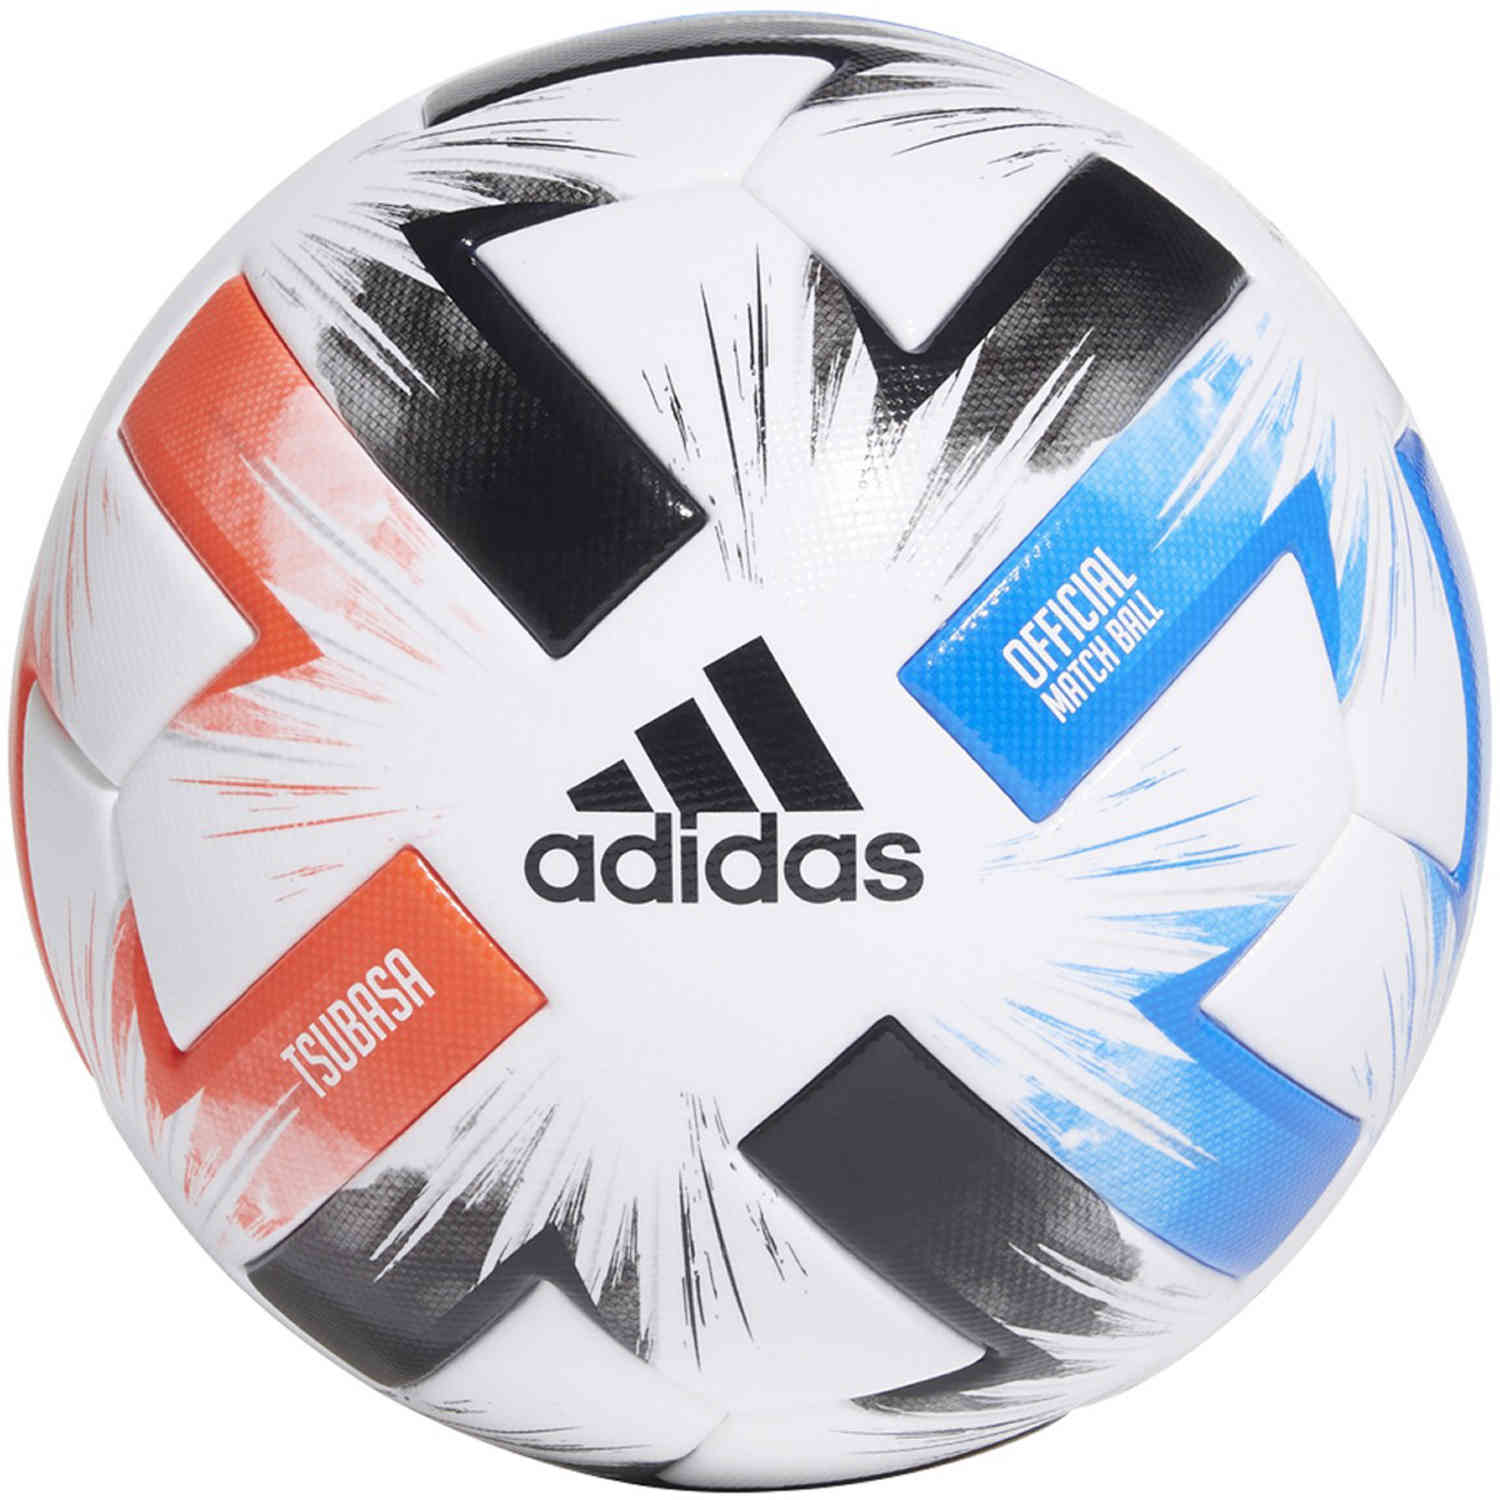 official match ball adidas